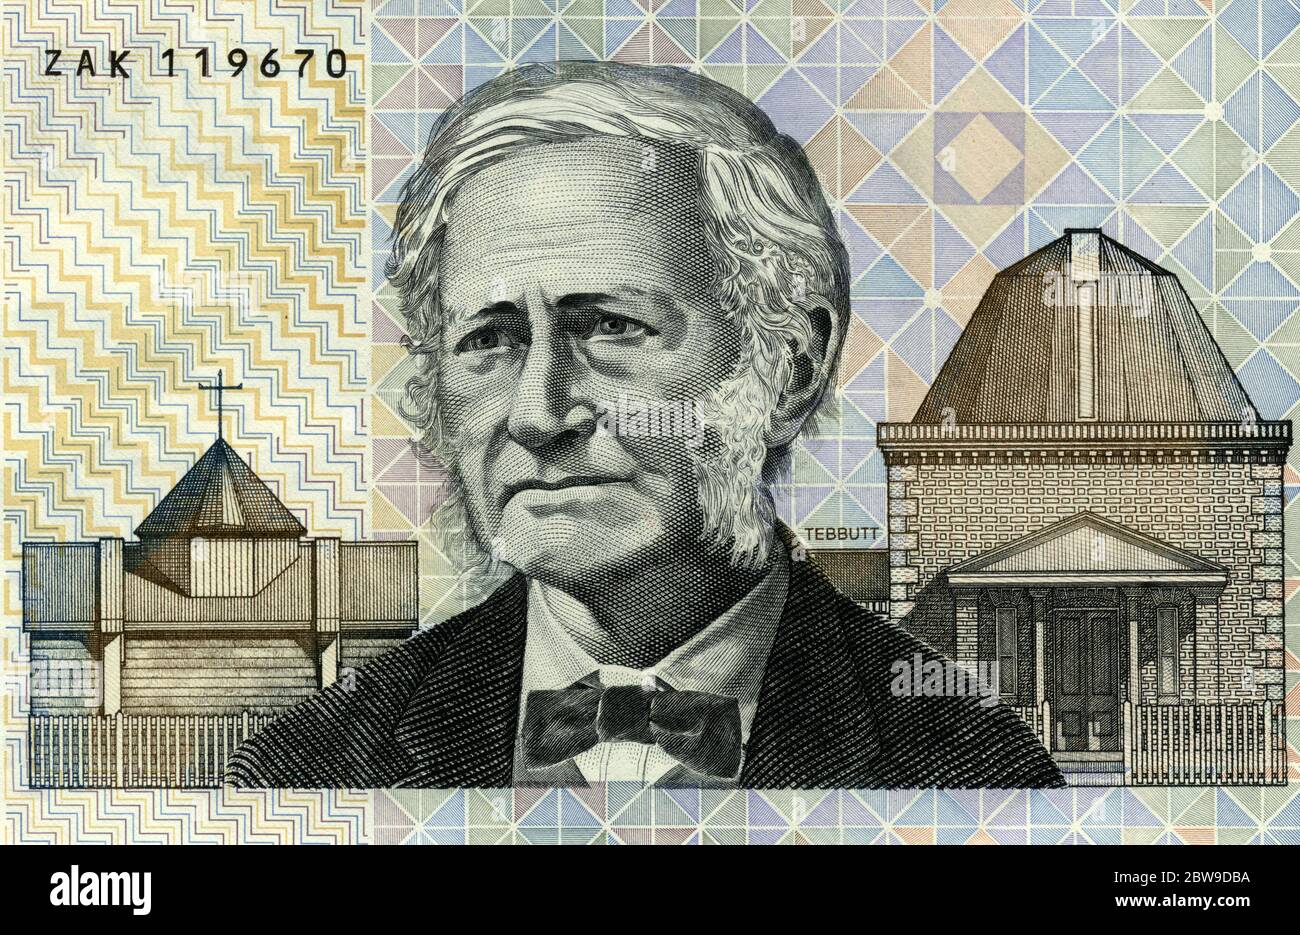 John Tebbott, astronomer, featured on $100 Australian bank note Stock Photo